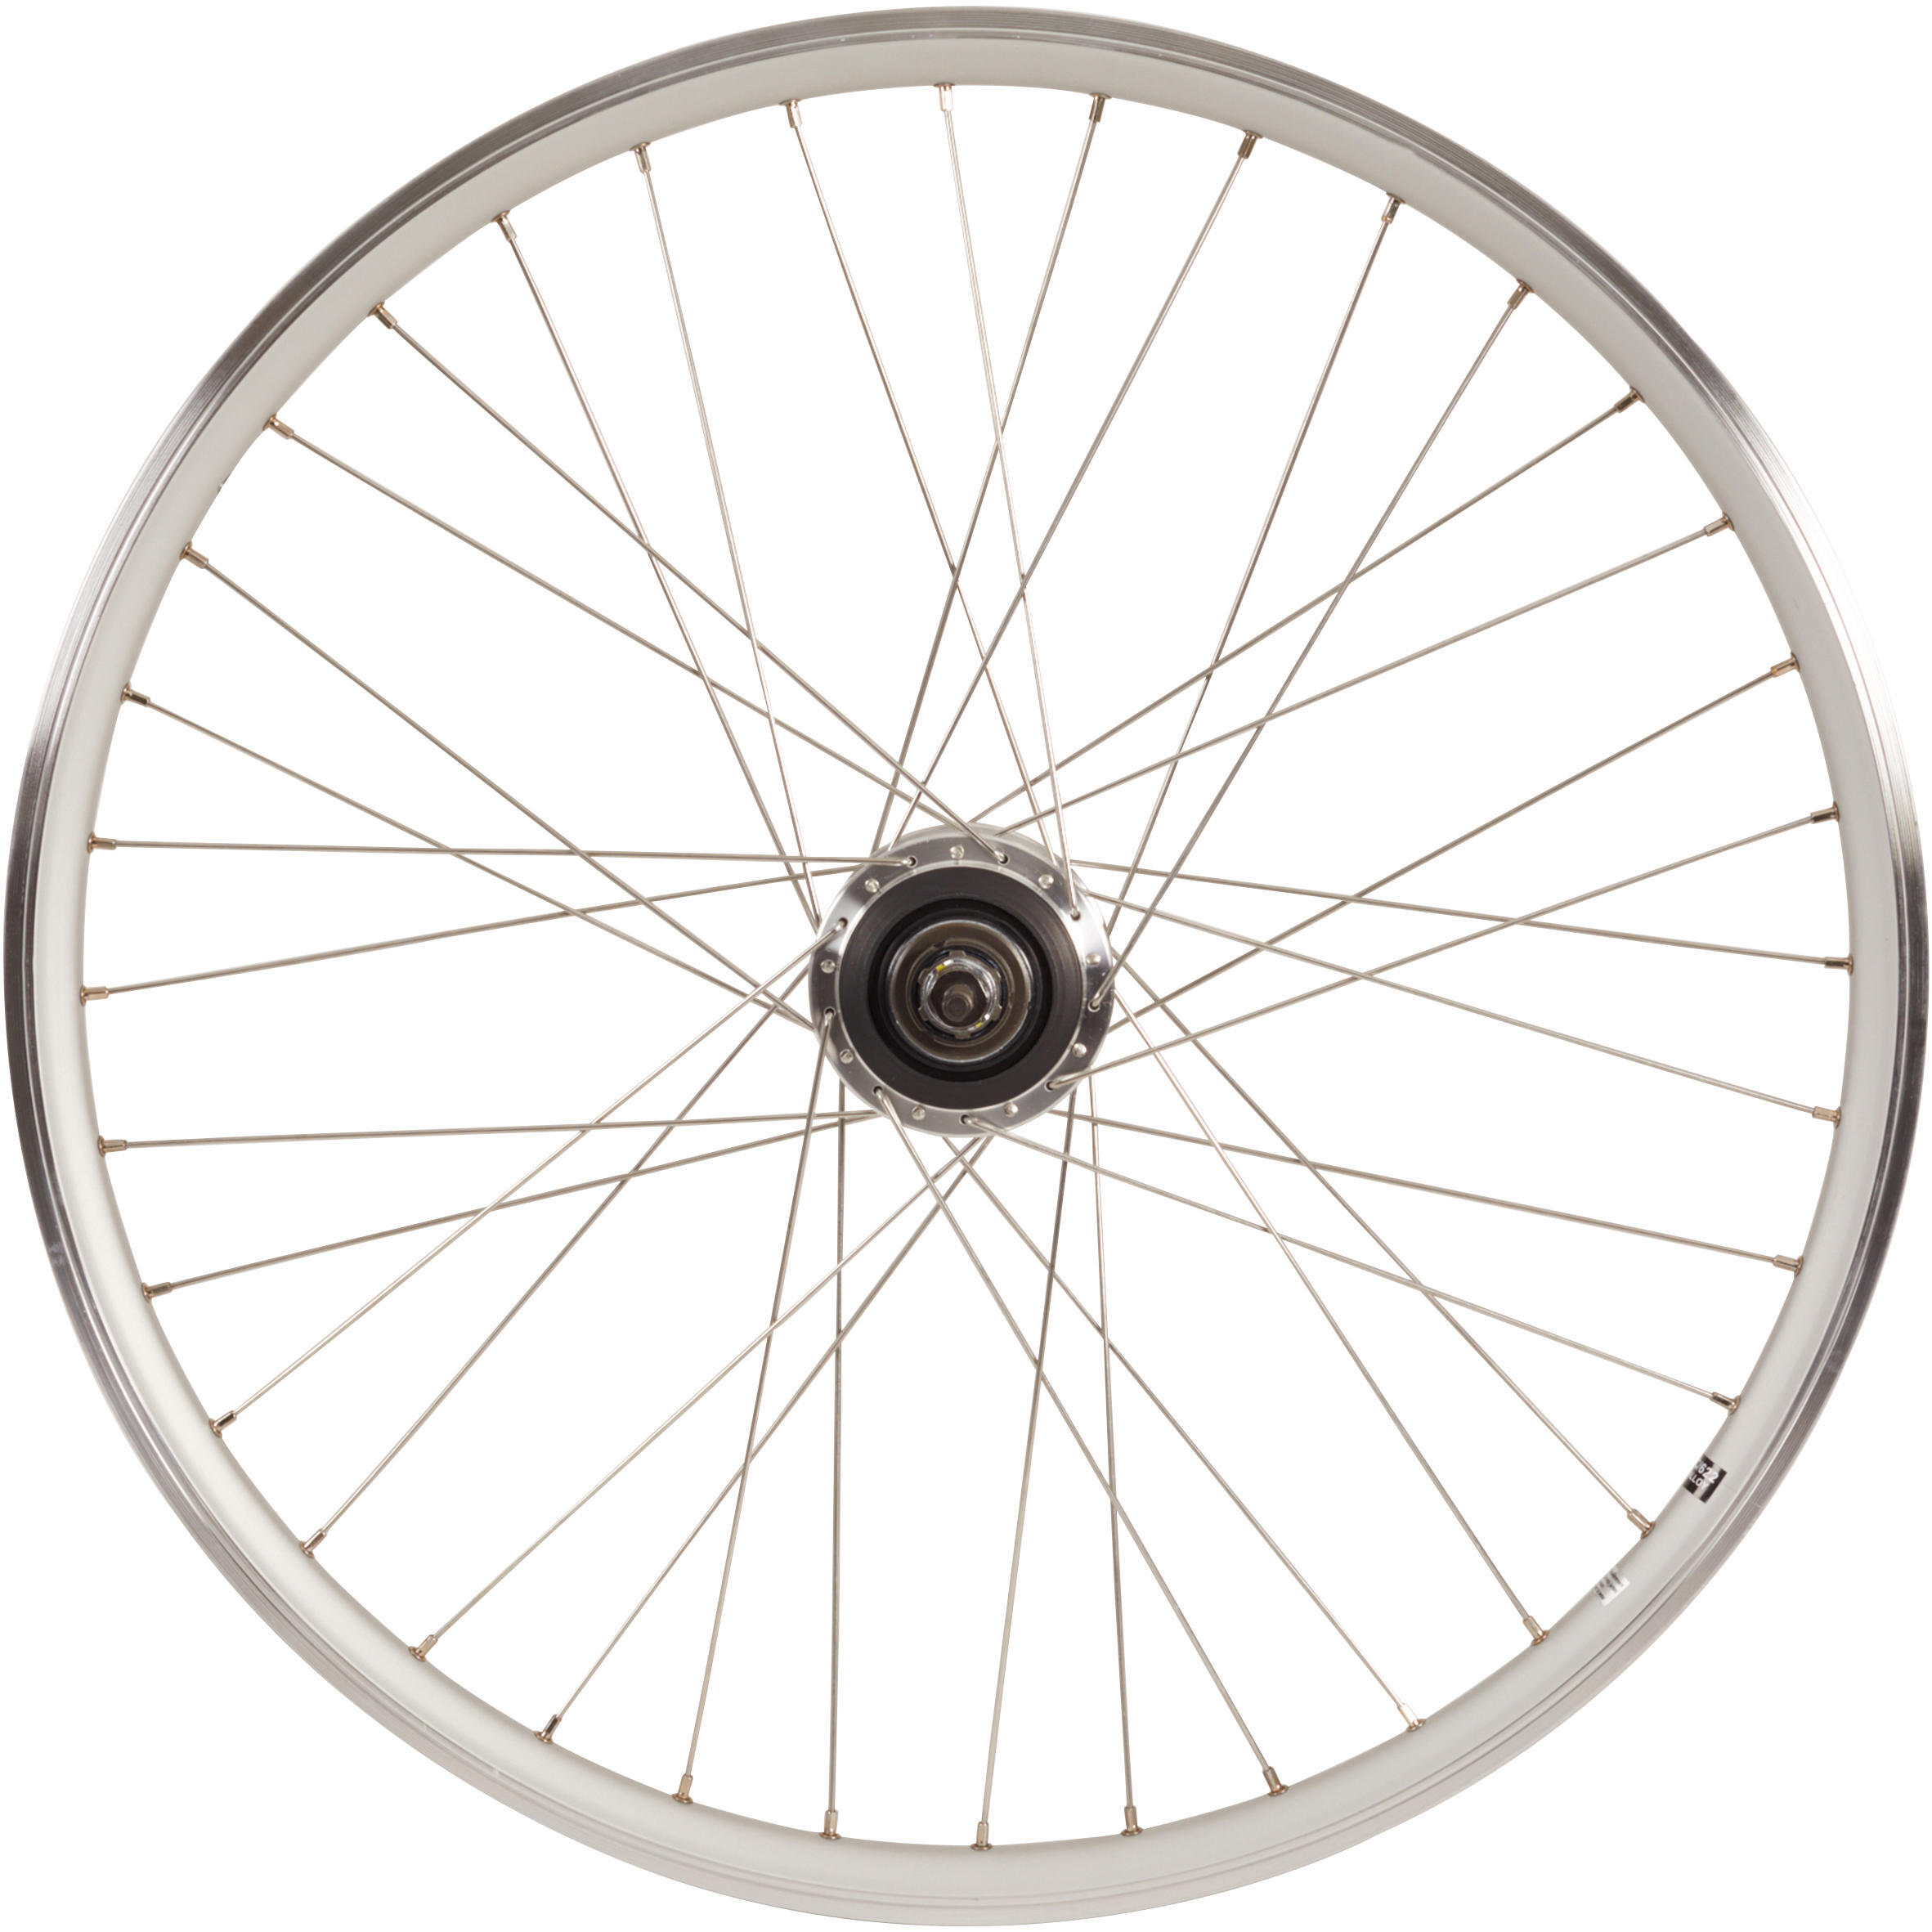 Заднее колесо крыльчатки 28-дюймовый обод для городского велосипеда с двойными стенками Nexus7 серебристый Elops 920, серебро чехол mypads e vano для dns s5301q